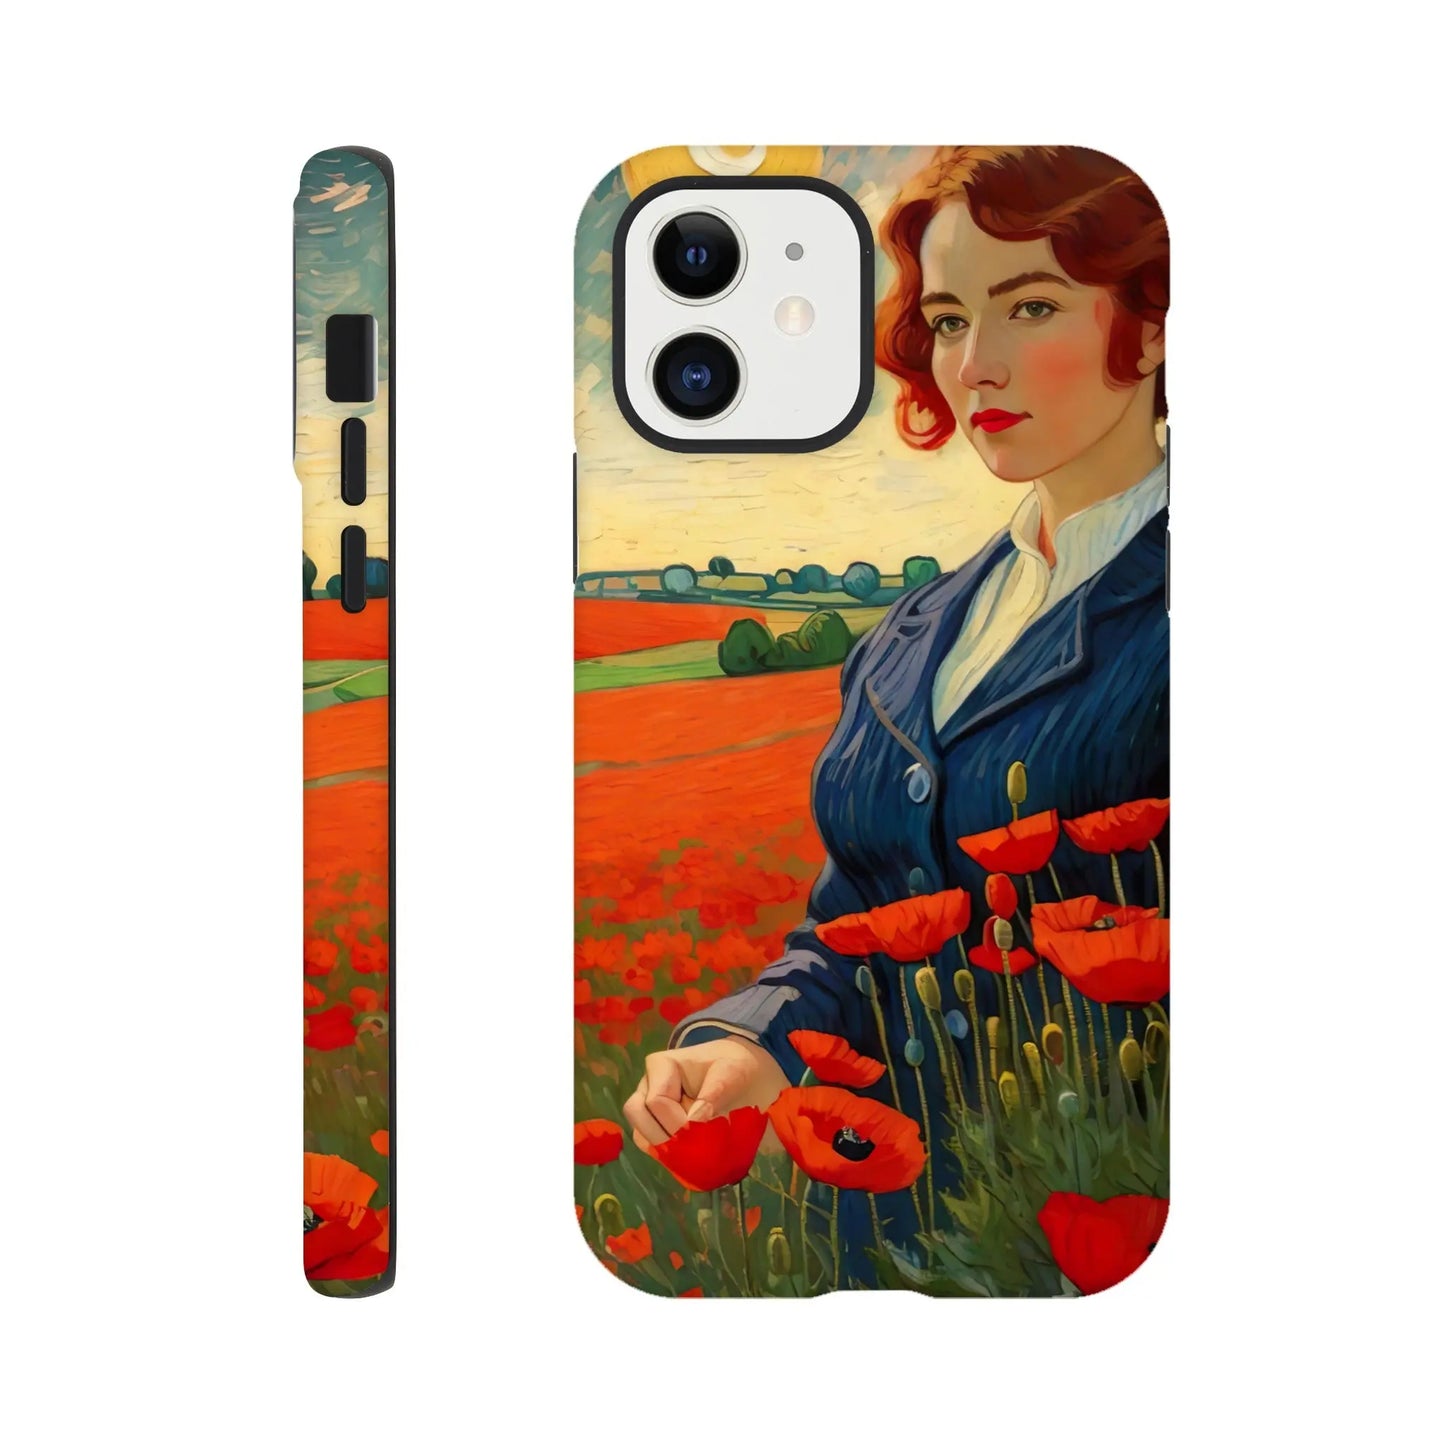 Smartphone-Hülle "Hart" - Blütezeit - Malerischer Stil, KI-Kunst RolConArt, Landschaften, iPhone-12